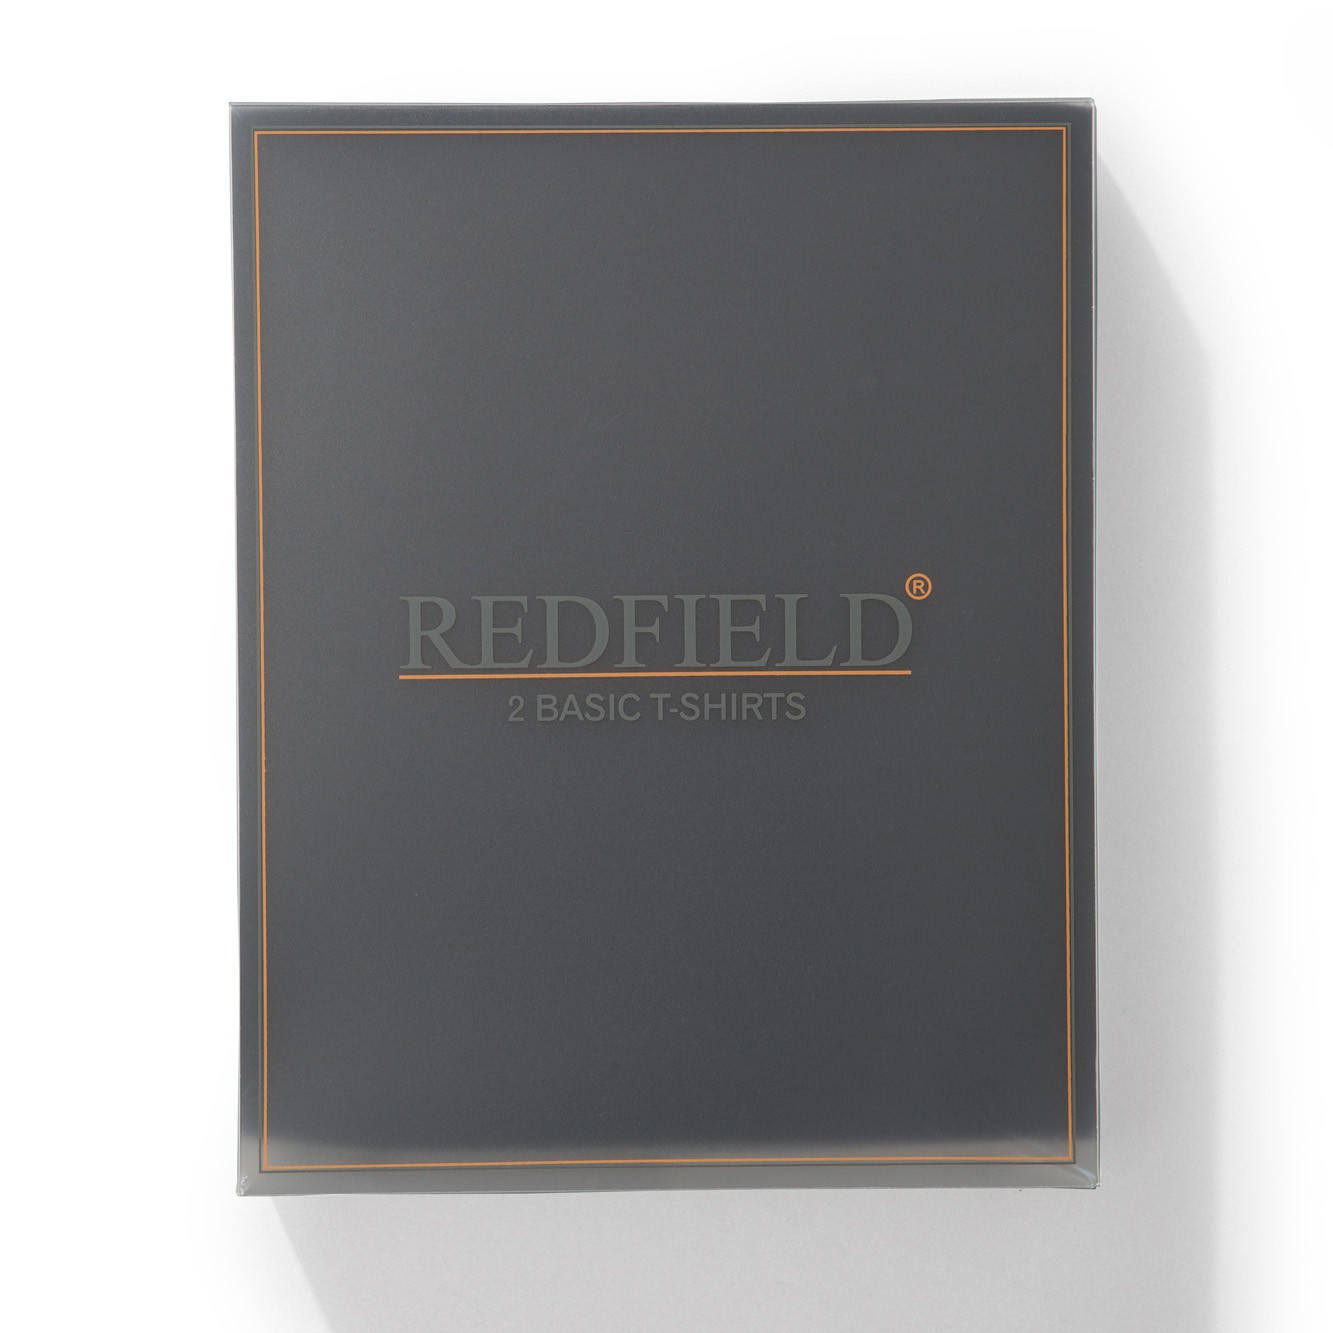 Dunkelgraues Rundhals-T-Shirt im Doppelpack von Redfield in Übergrößen bis 10XL für Herren